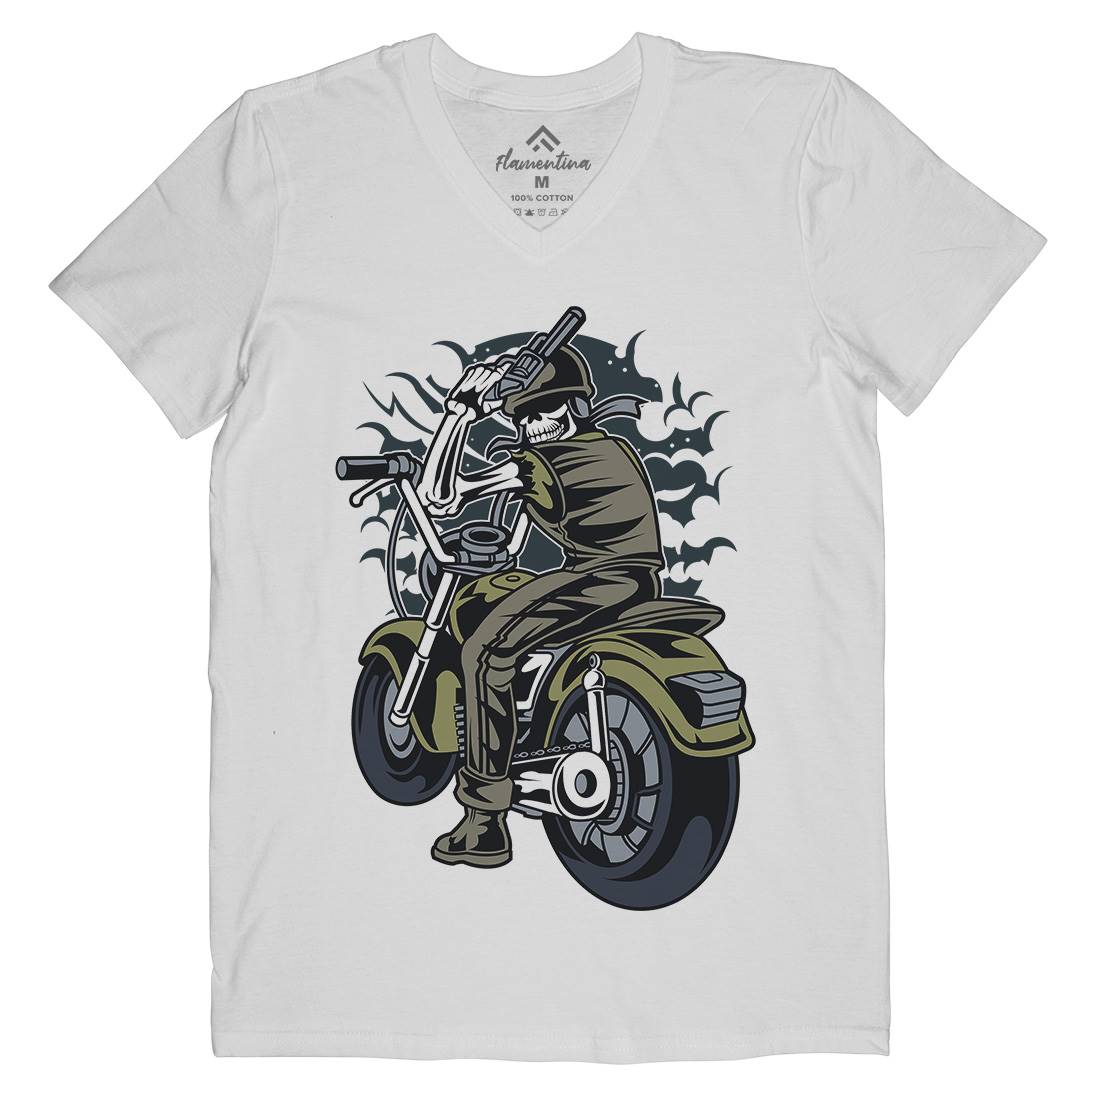 Skull Rider Mens Organic V-Neck T-Shirt Motorcycles C444